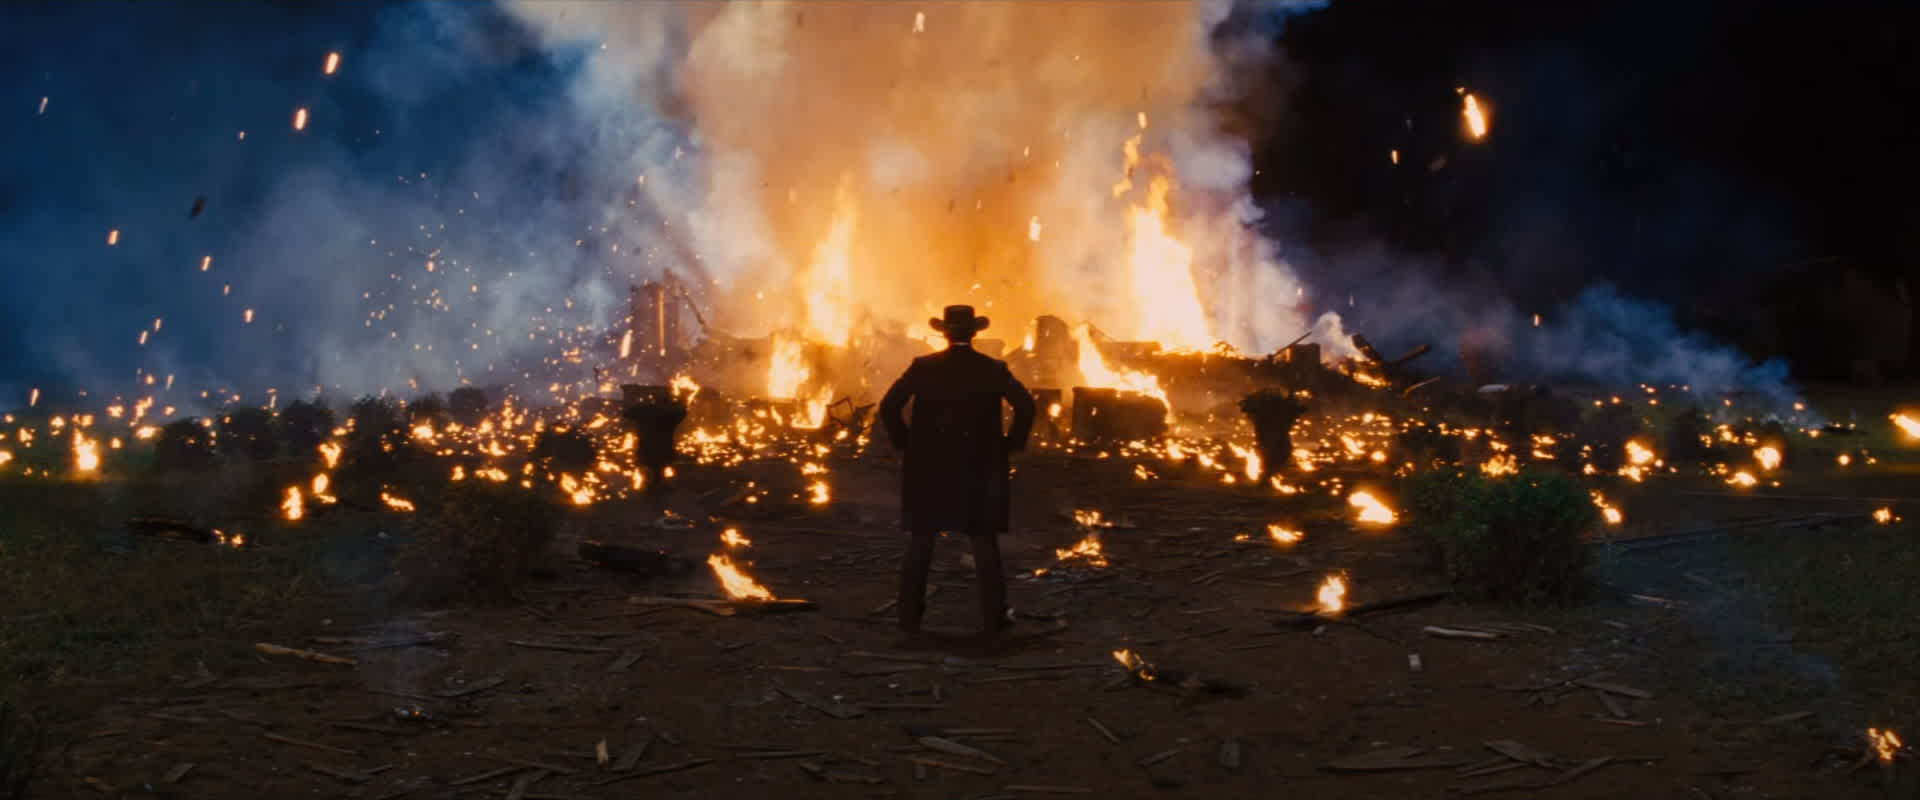 Il campo lungo: Frame del film Django Unchained